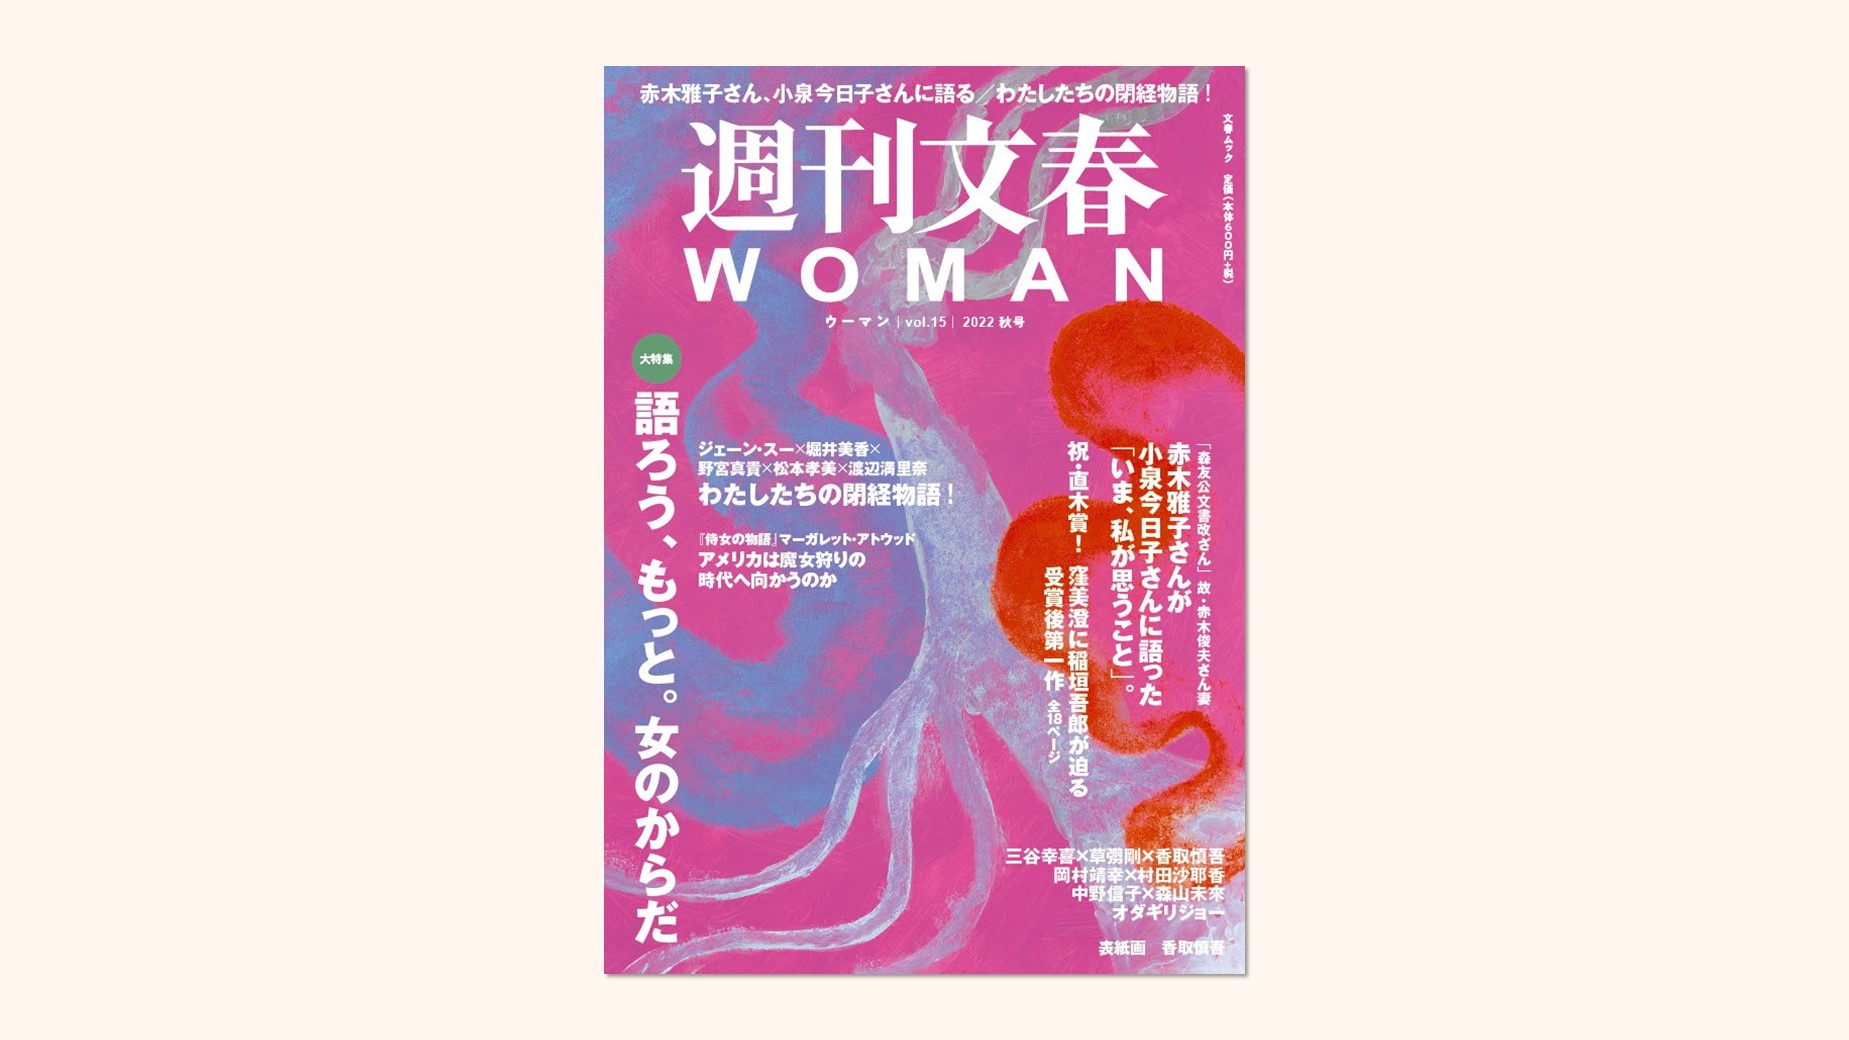 「週刊文春WOMAN」2022 秋号に掲載